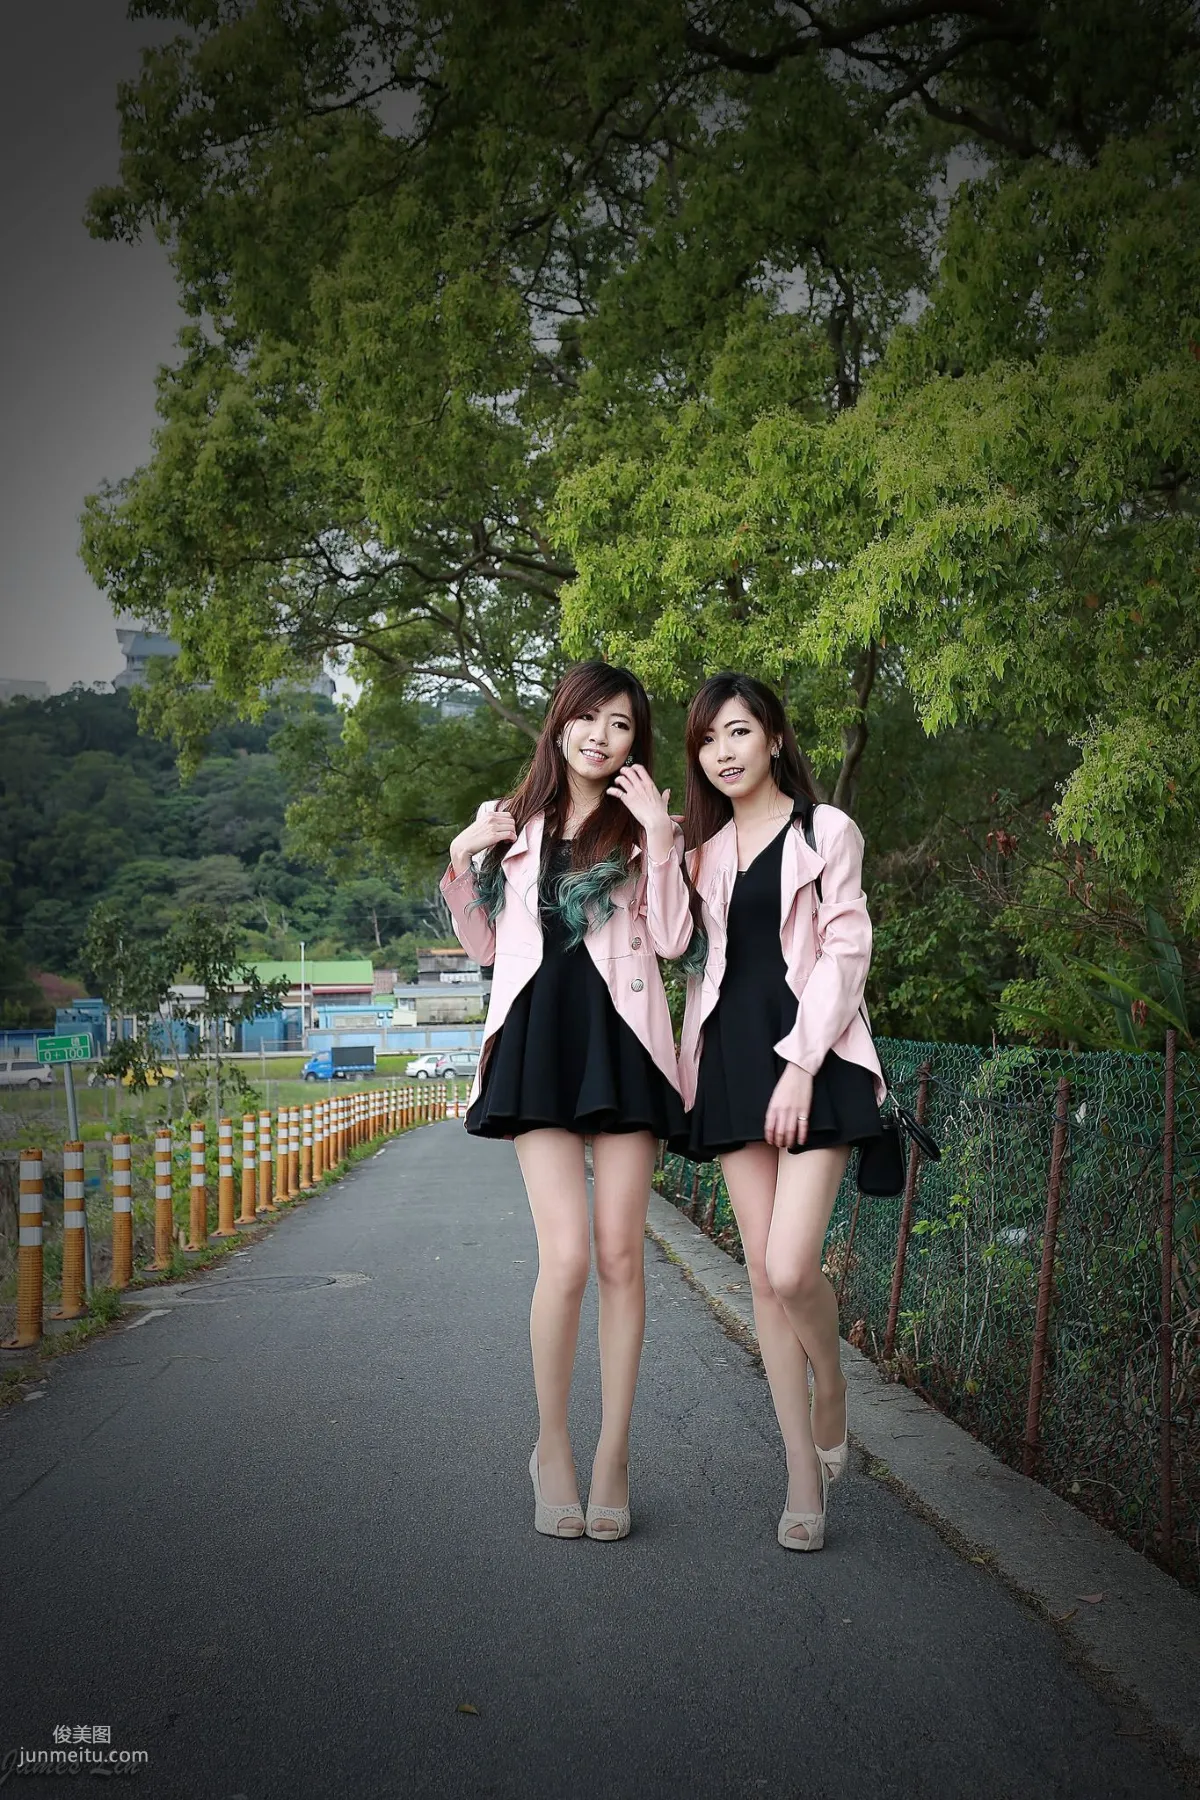 极品清纯甜美台湾双胞胎姐妹花清新外拍写真集64